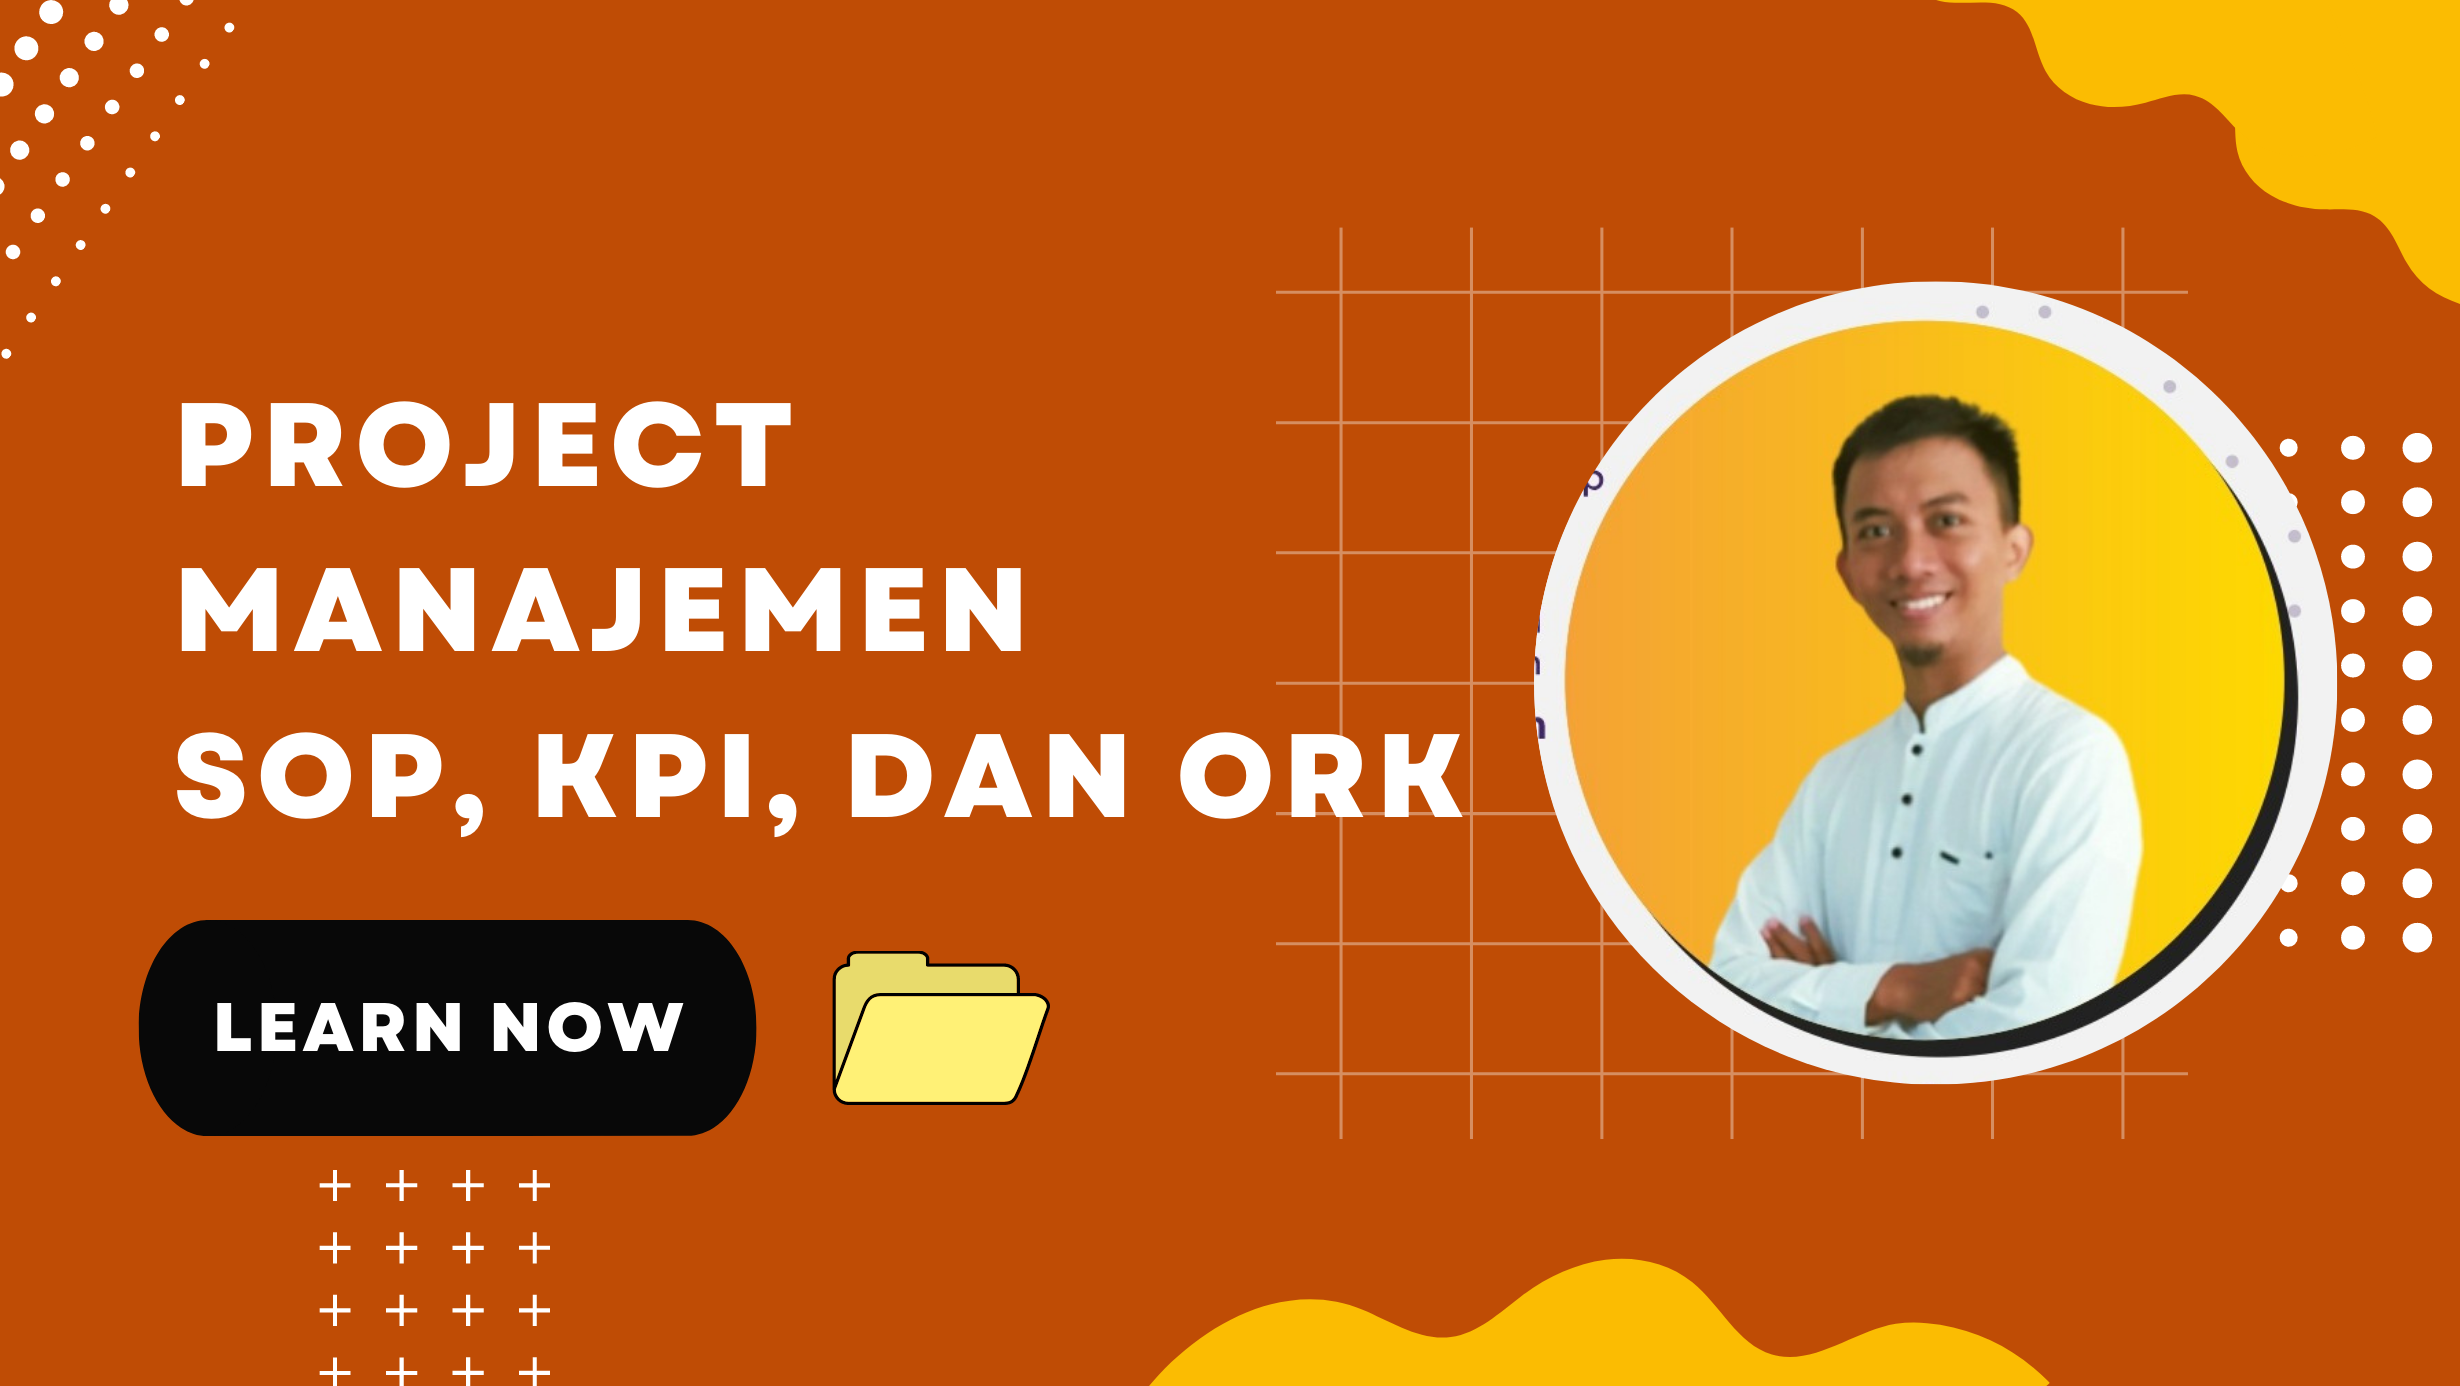 Project Manajemen SOP, KPI, dan ORK